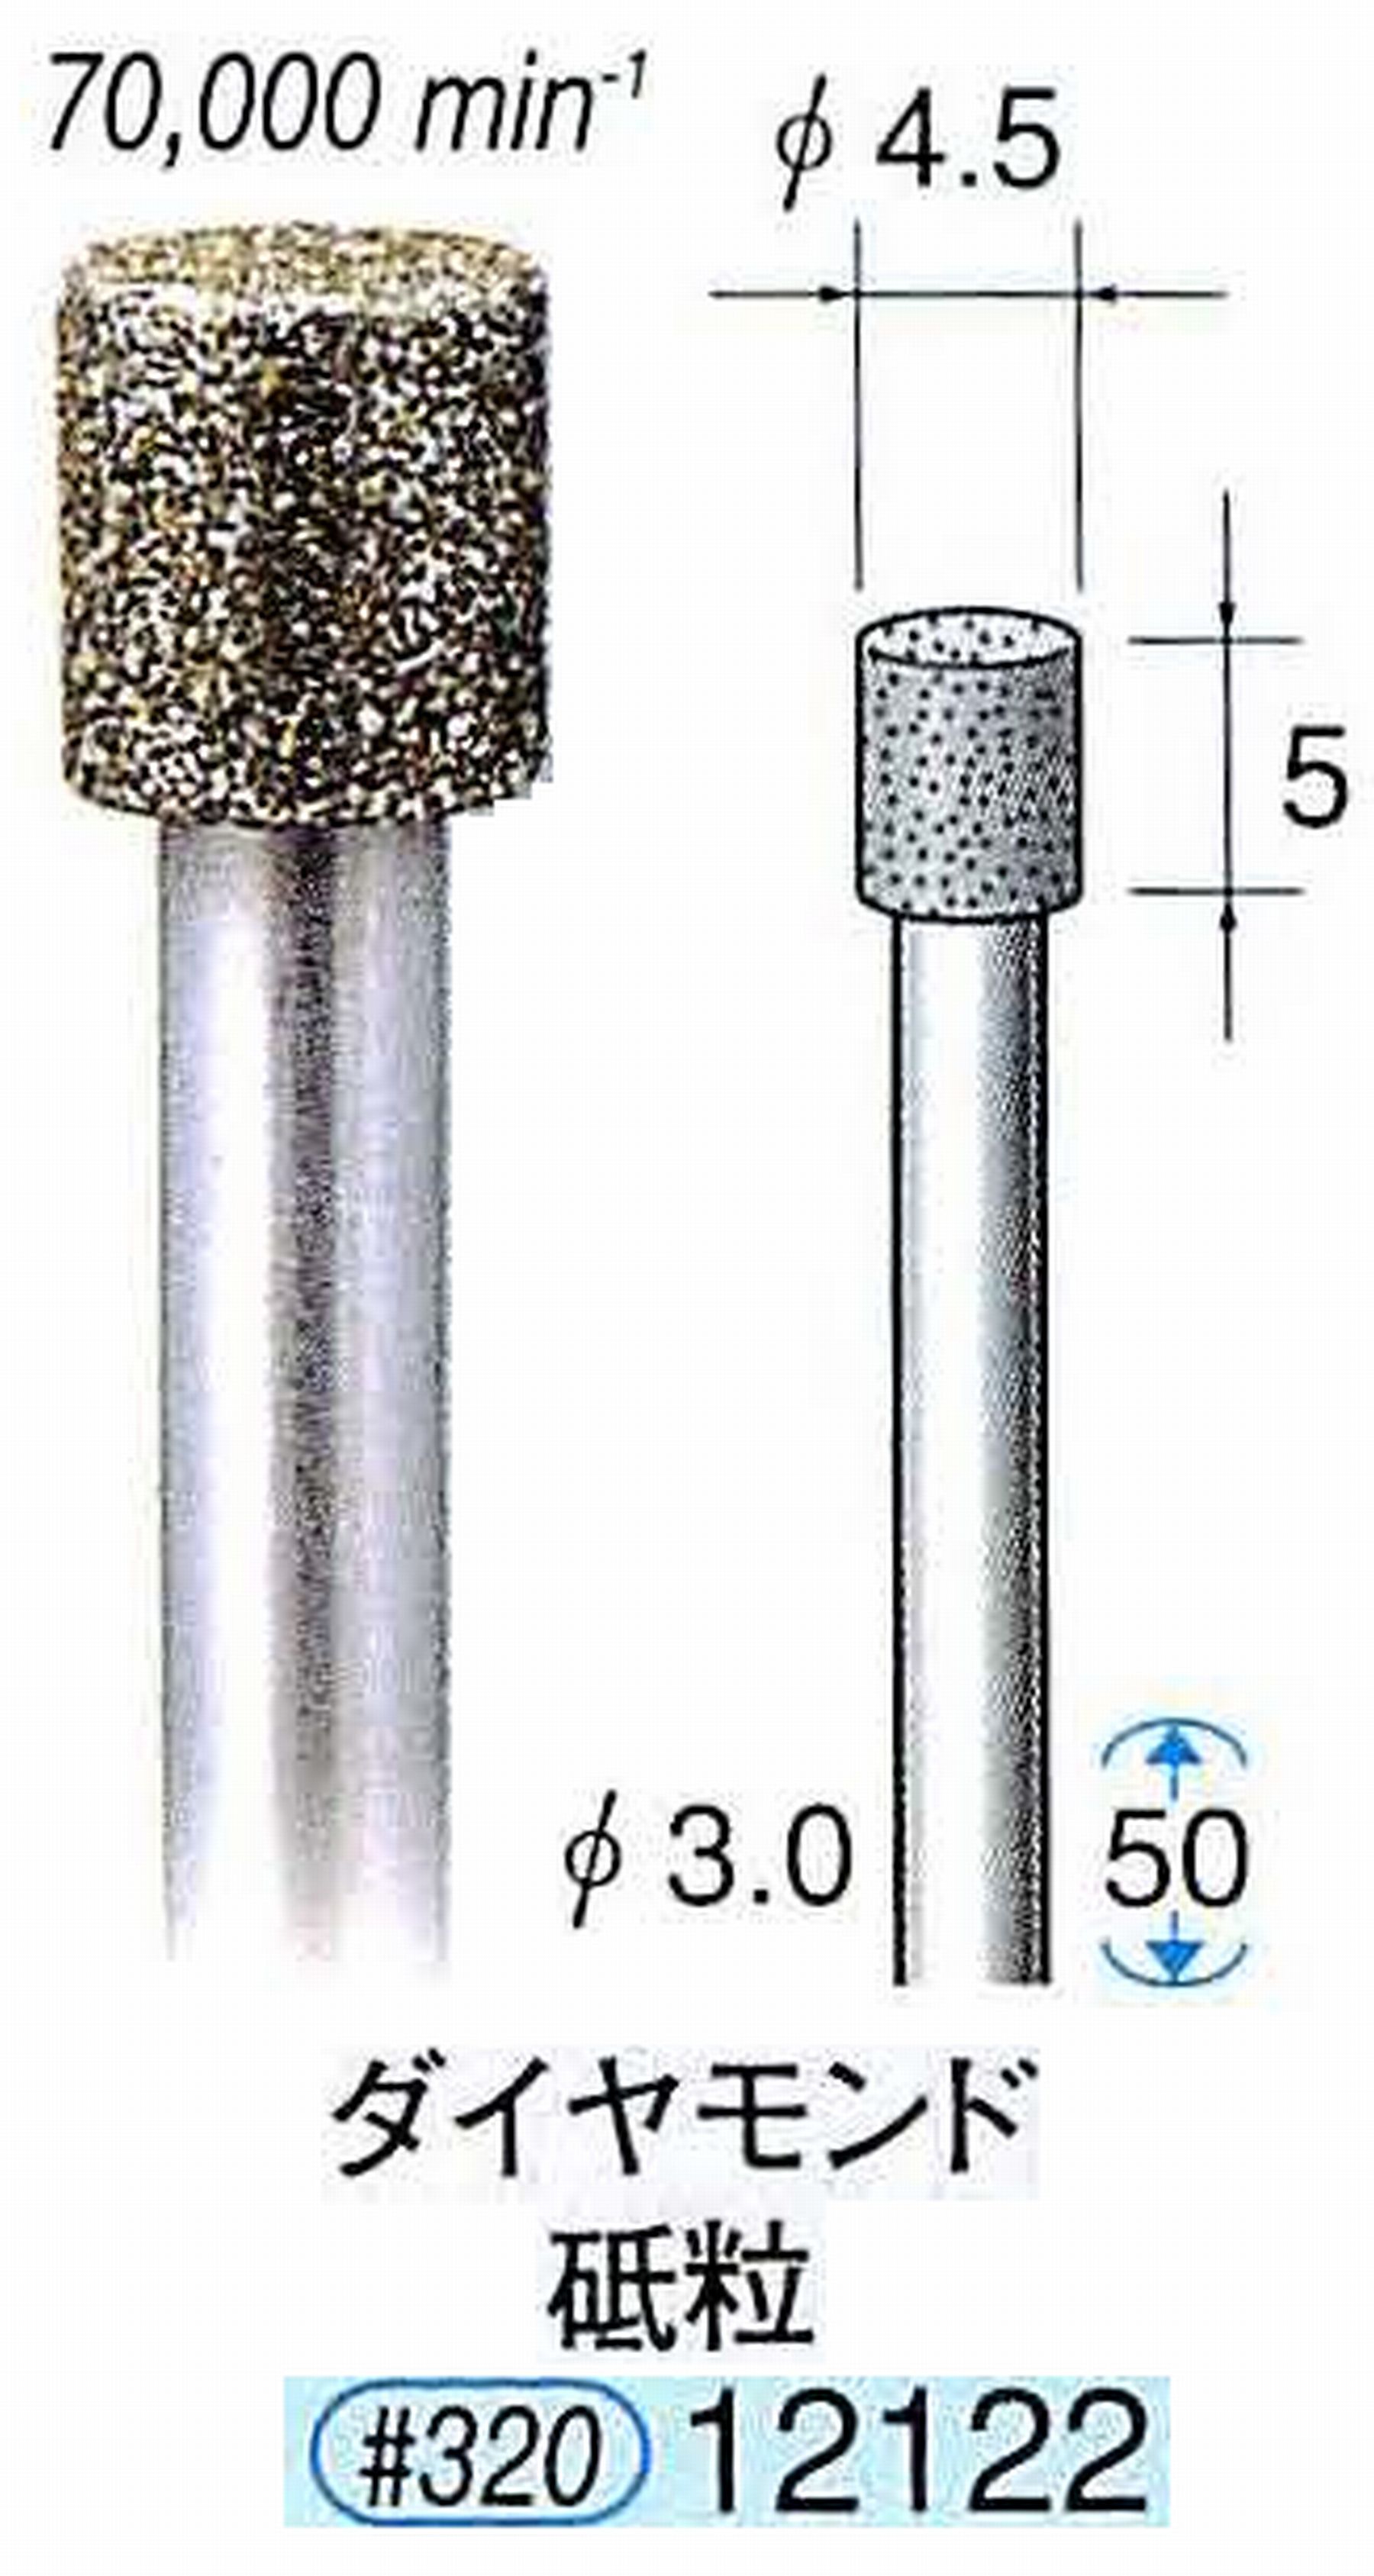 ナカニシ/NAKANISHI 電着ダイヤモンド ダイヤモンド砥粒 軸径(シャンク)φ3.0mm 12122